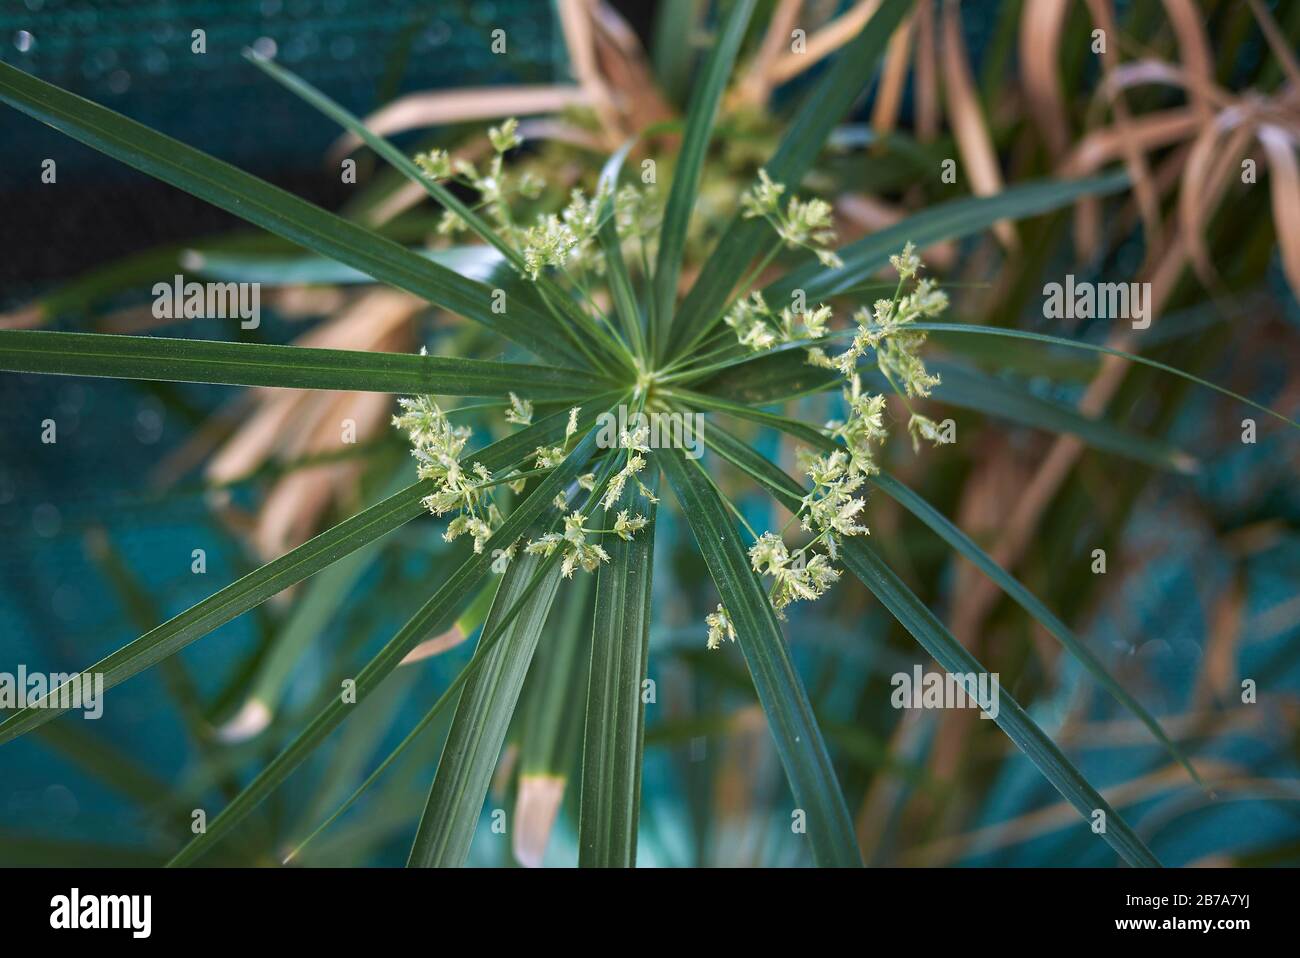 Cyperus alternifolius Stock Photo